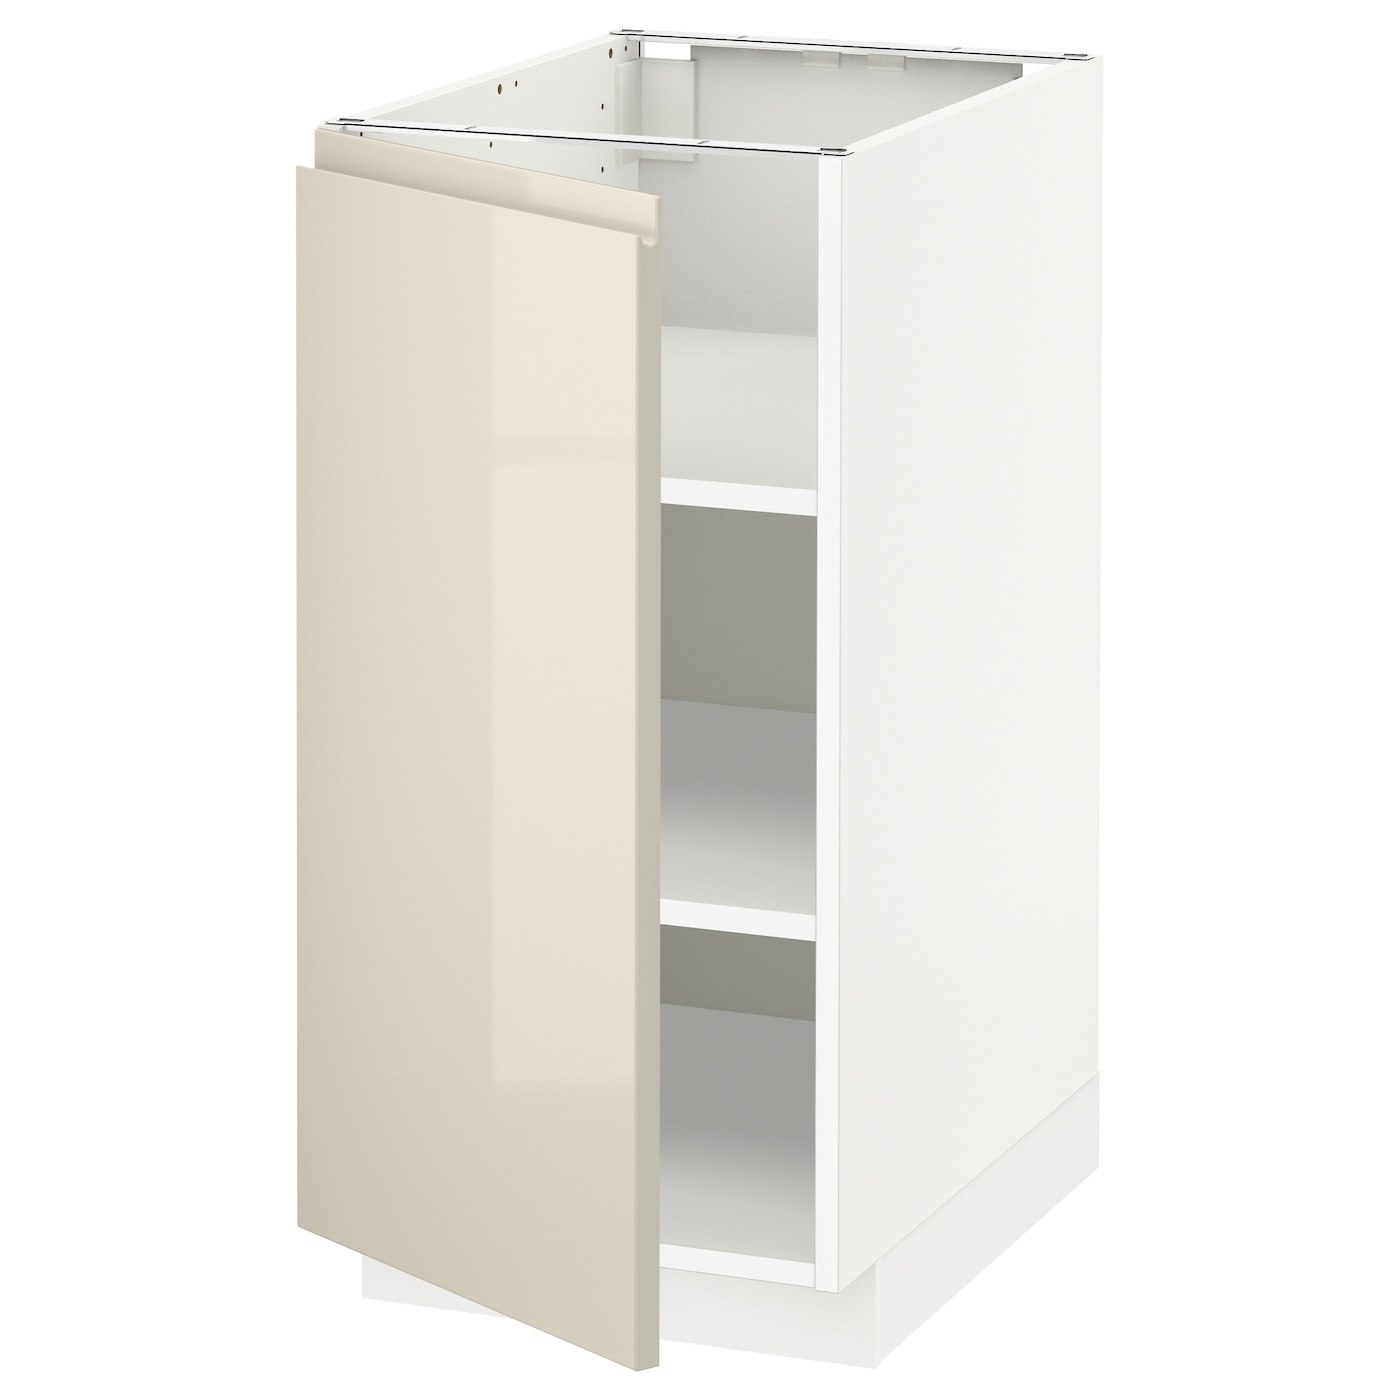 Напольный шкаф - IKEA METOD, 88x62x40см, белый/бежевый, МЕТОД ИКЕА